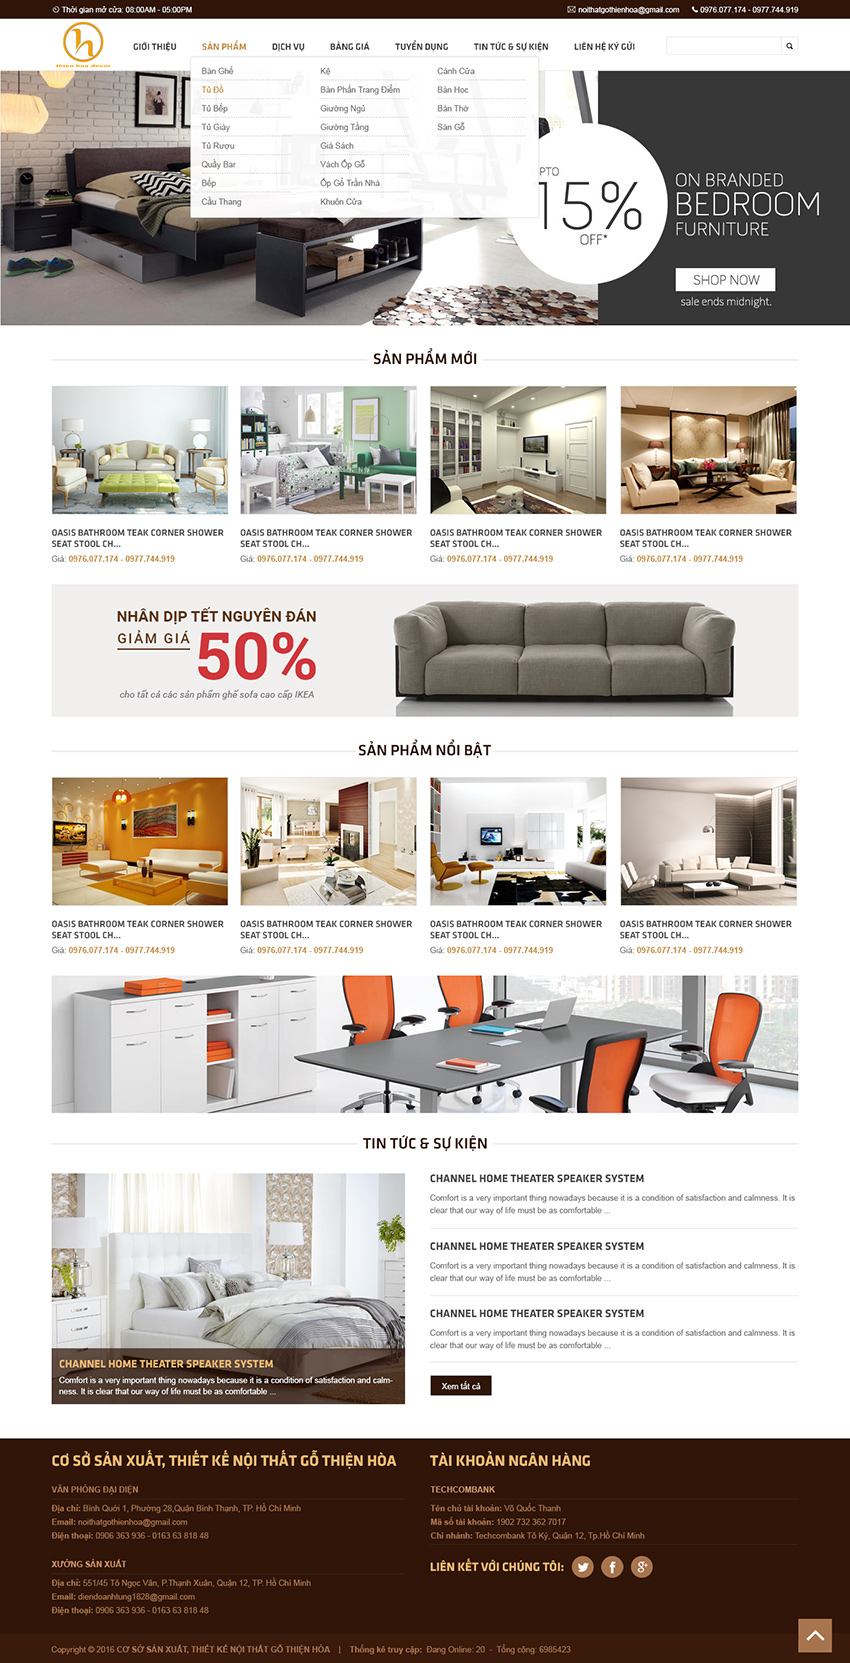 Mẫu giao diện thiết kế website công ty nội thất Thiên Hoà